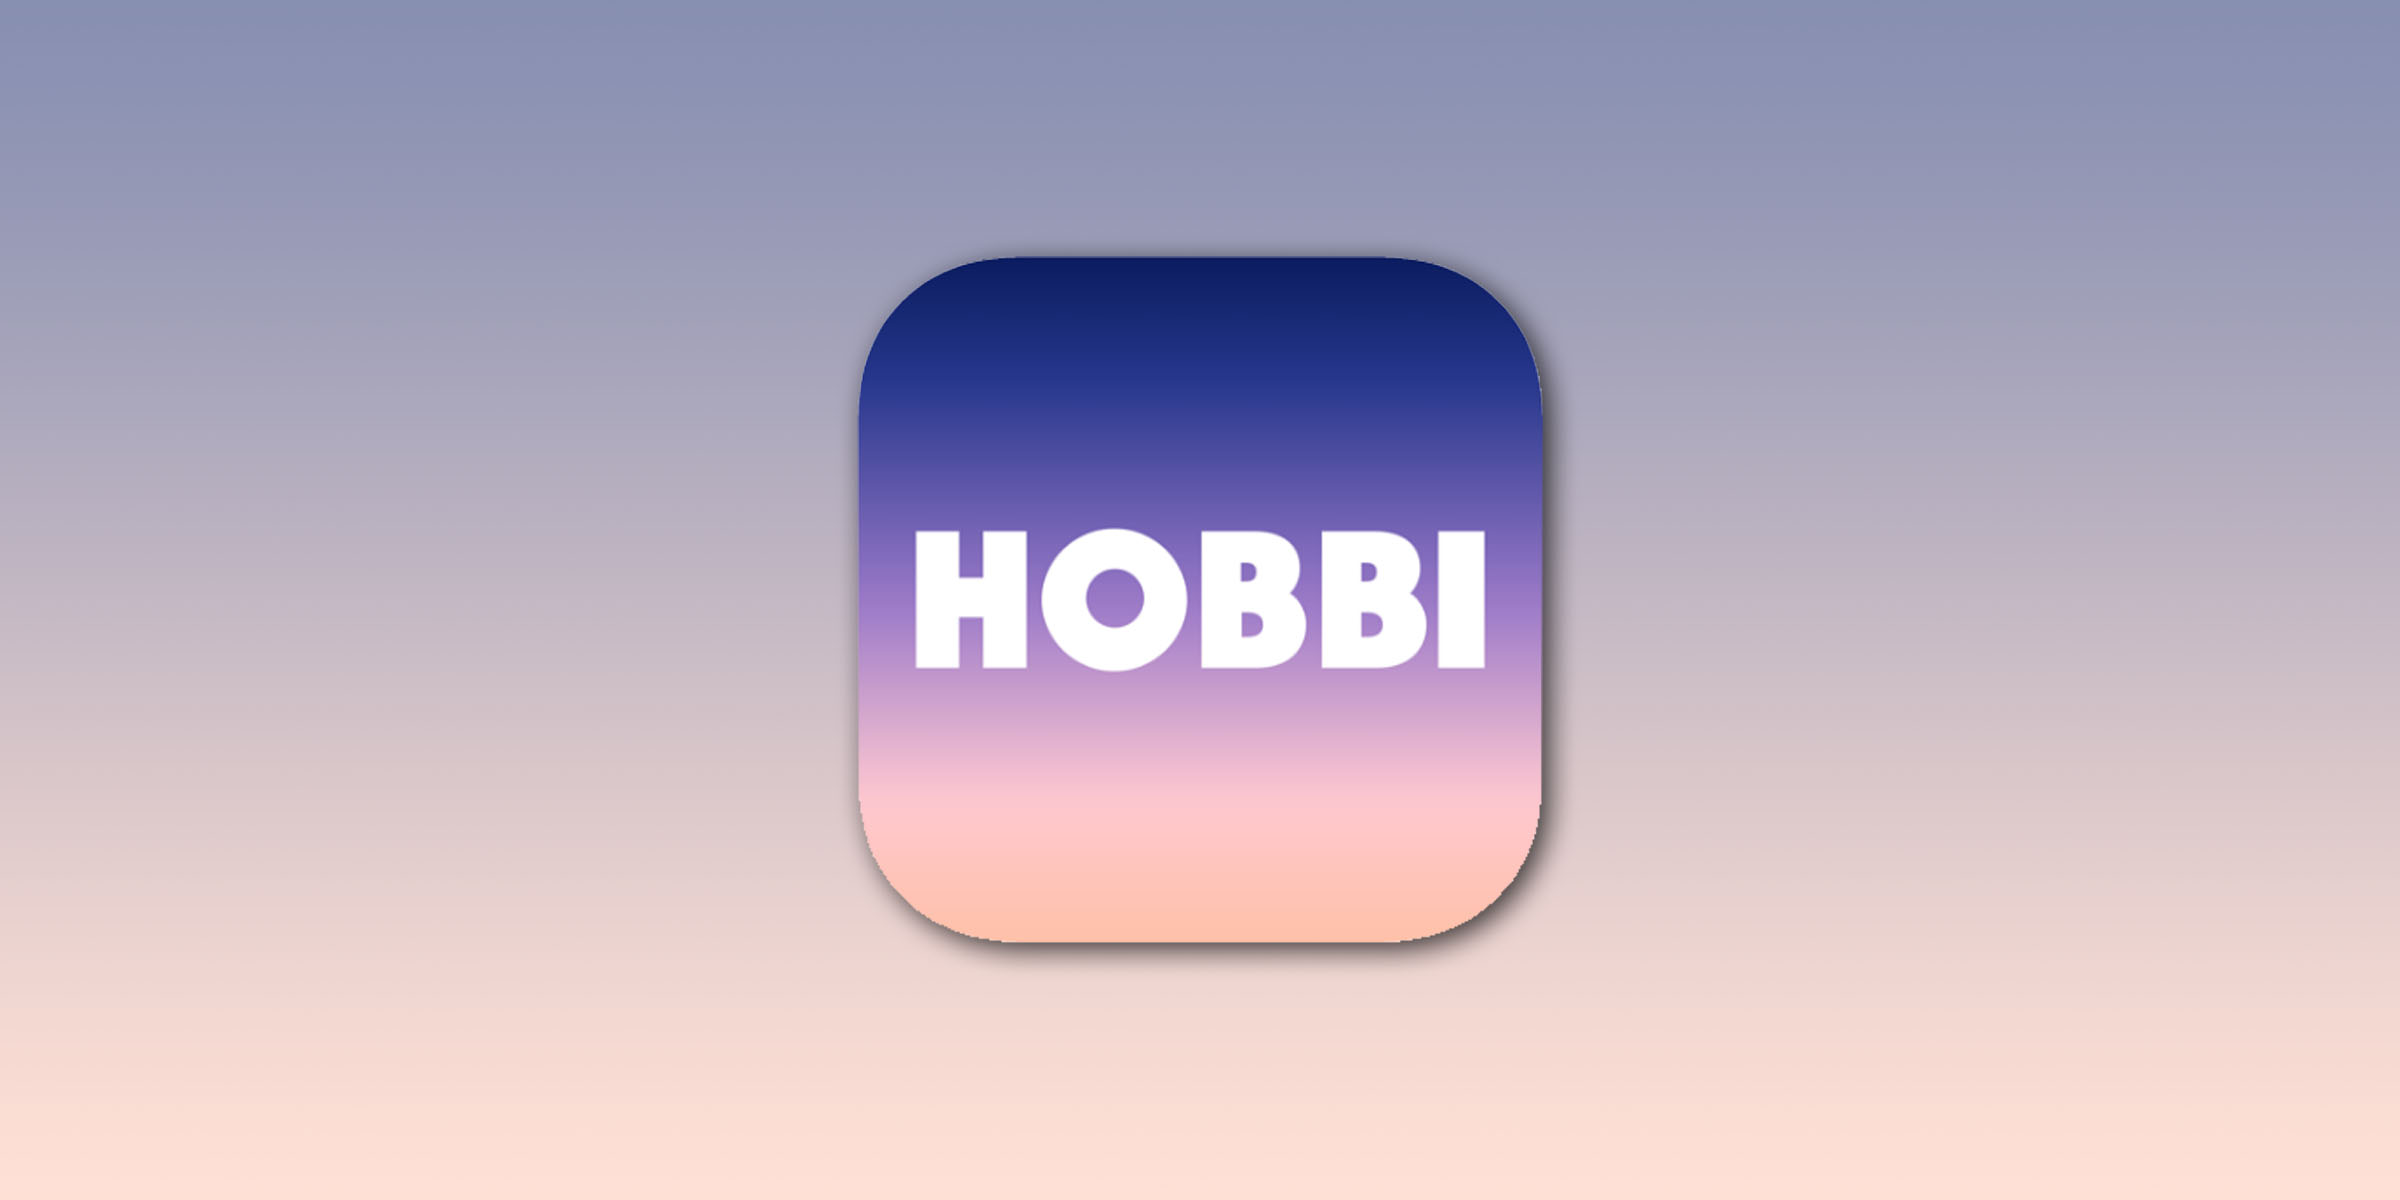 متجر التطبيقات 14 فبراير 2020
Facebook يقدم Hobbi ، أ Pinterest 'يبدو مشابها'